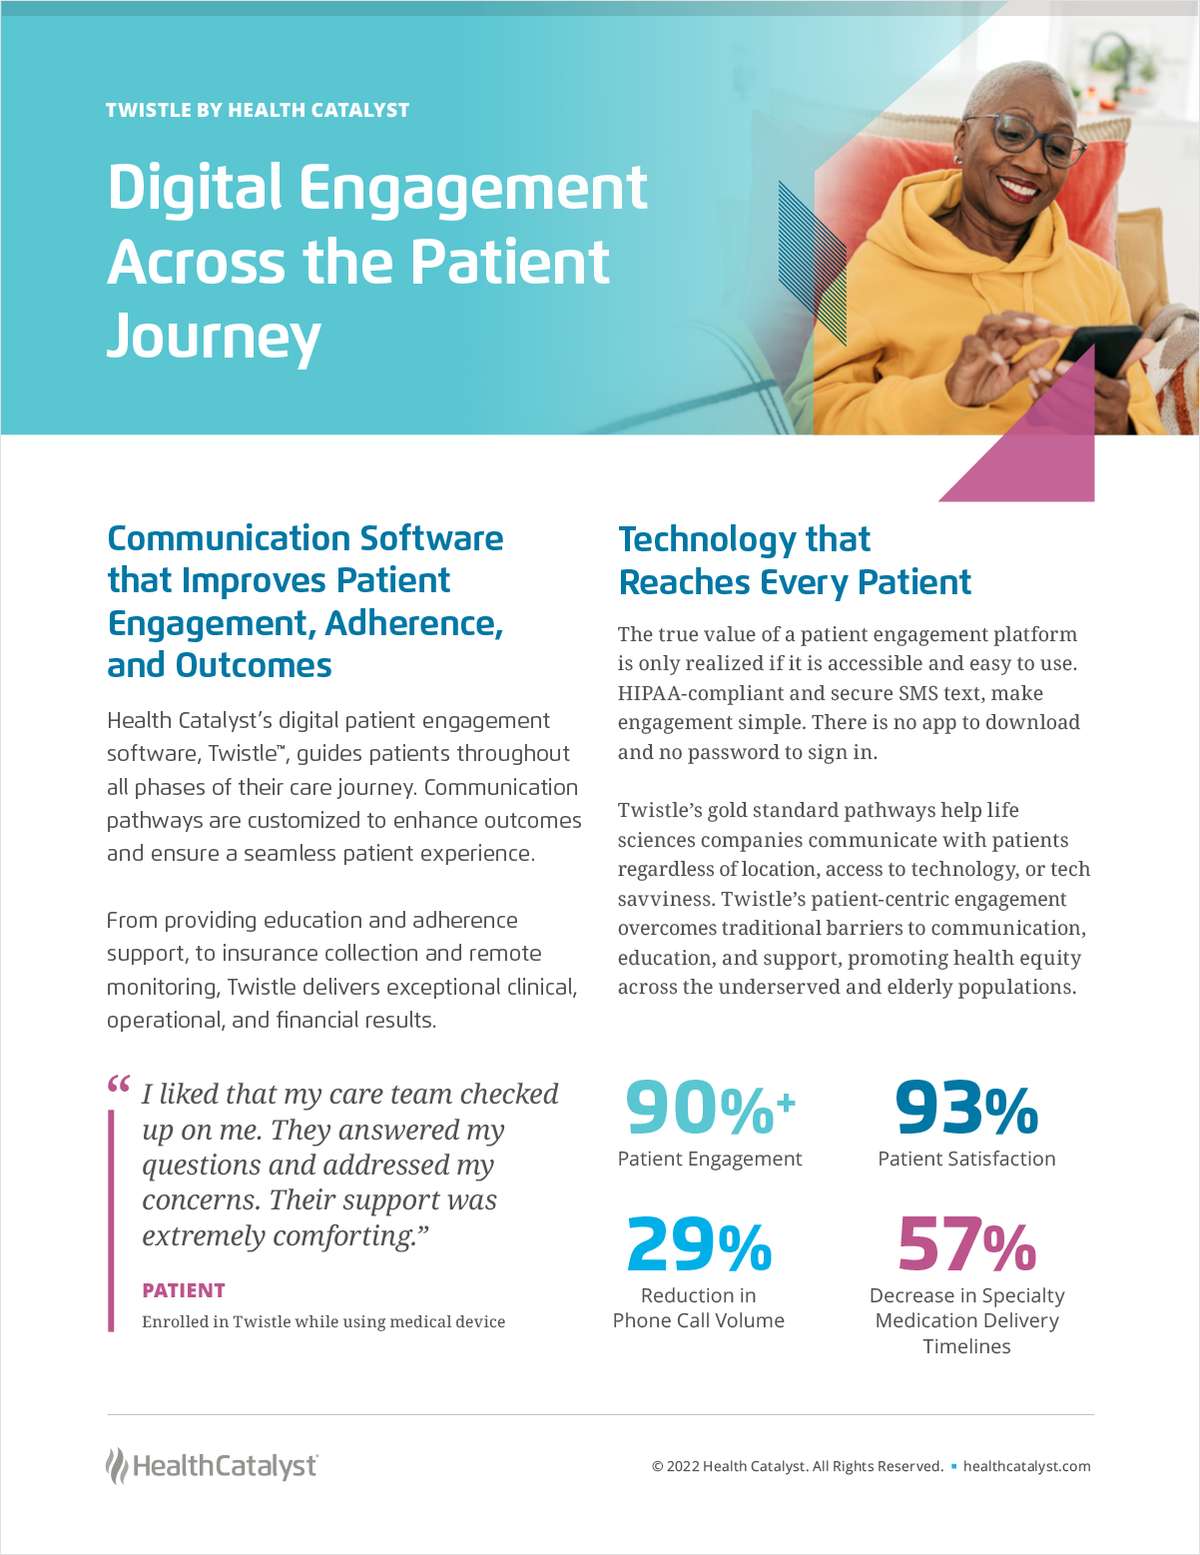 Optimize Digital Engagement Across the Patient Journey